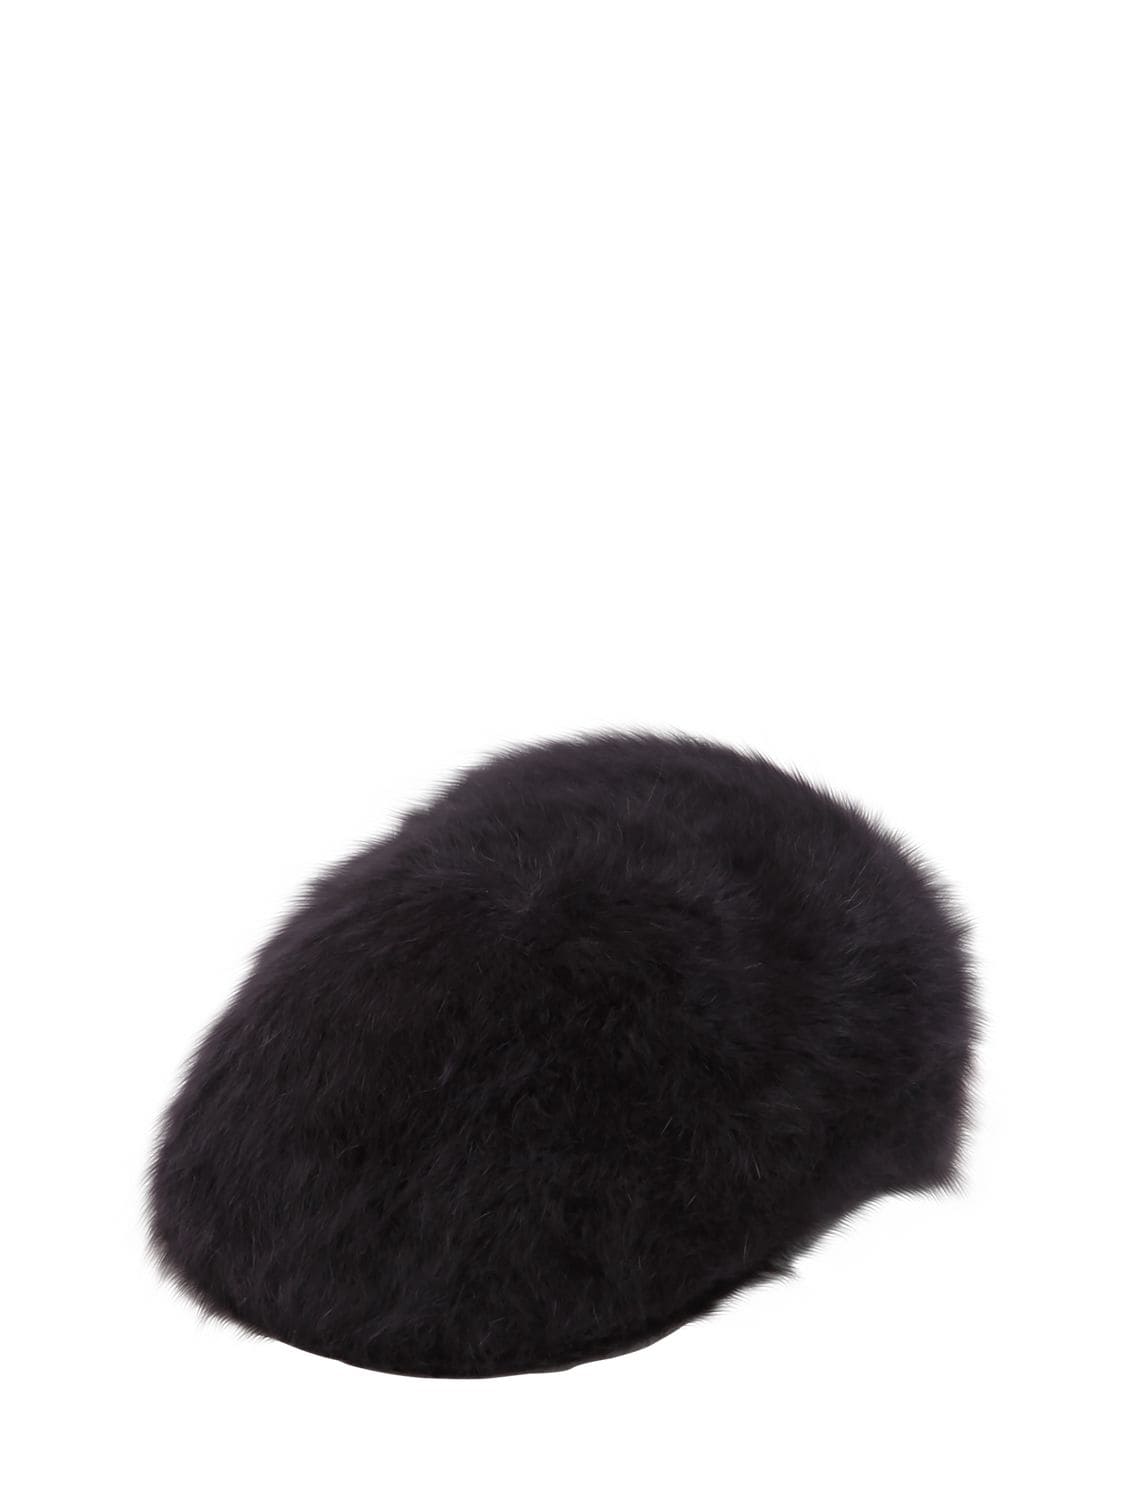 Kangol Furgora 504 Angora Blend Hat In Black